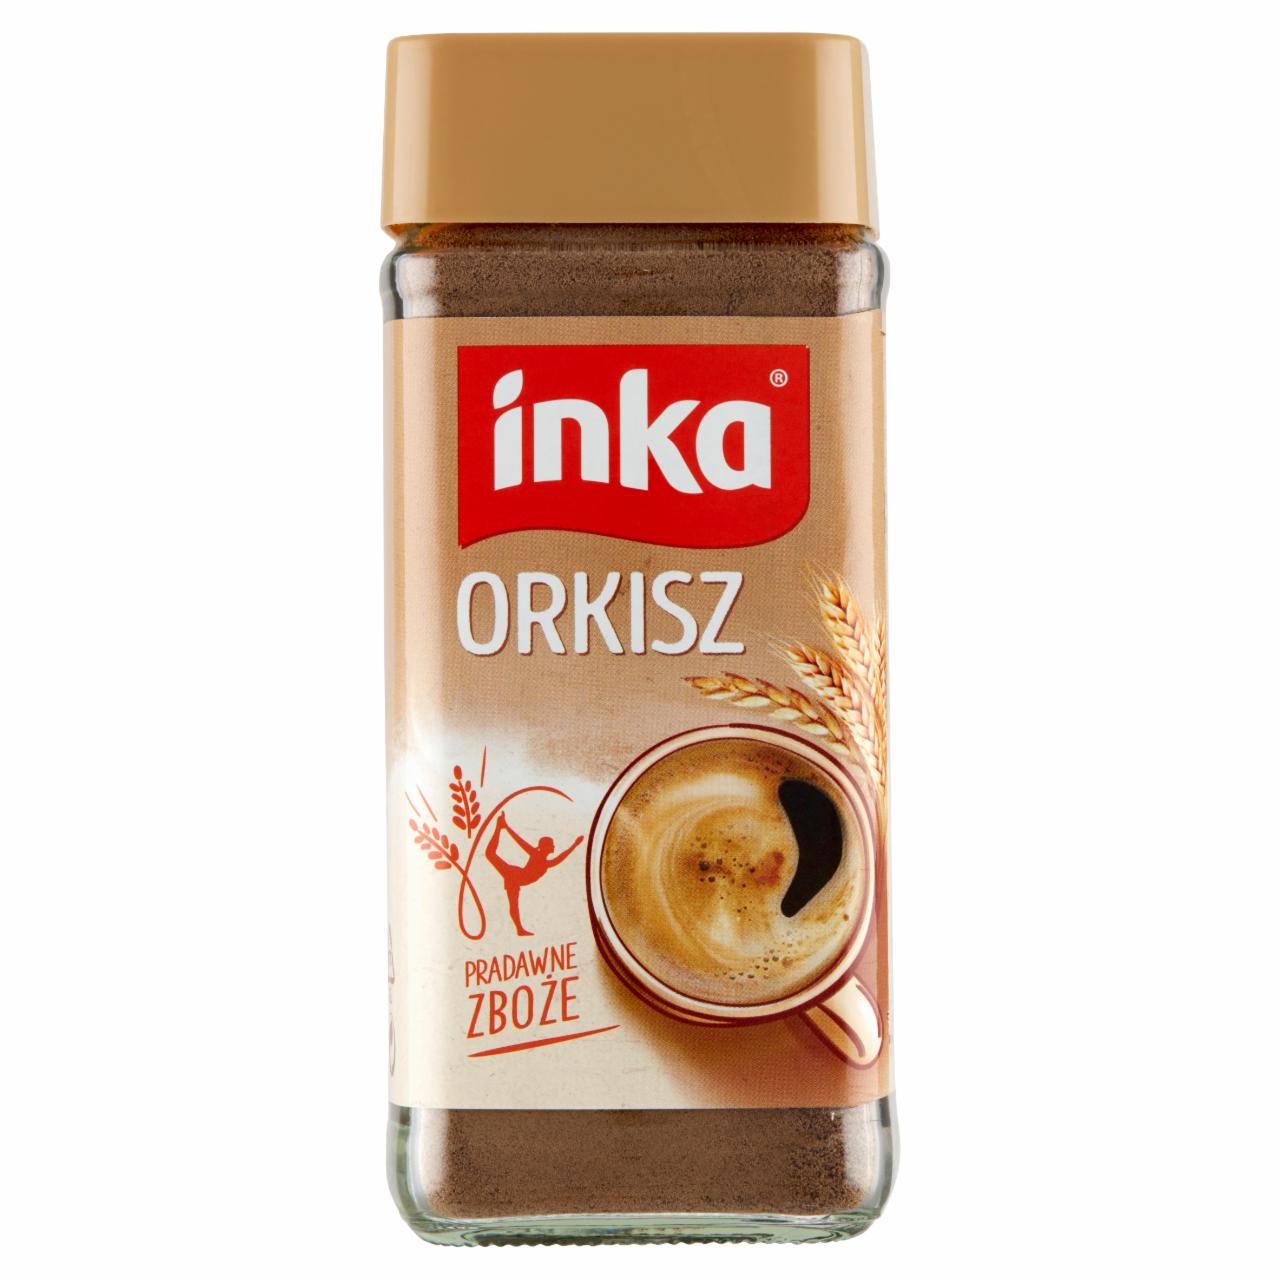 Zdjęcia - Inka Rozpuszczalna kawa zbożowa orkiszowa 100 g